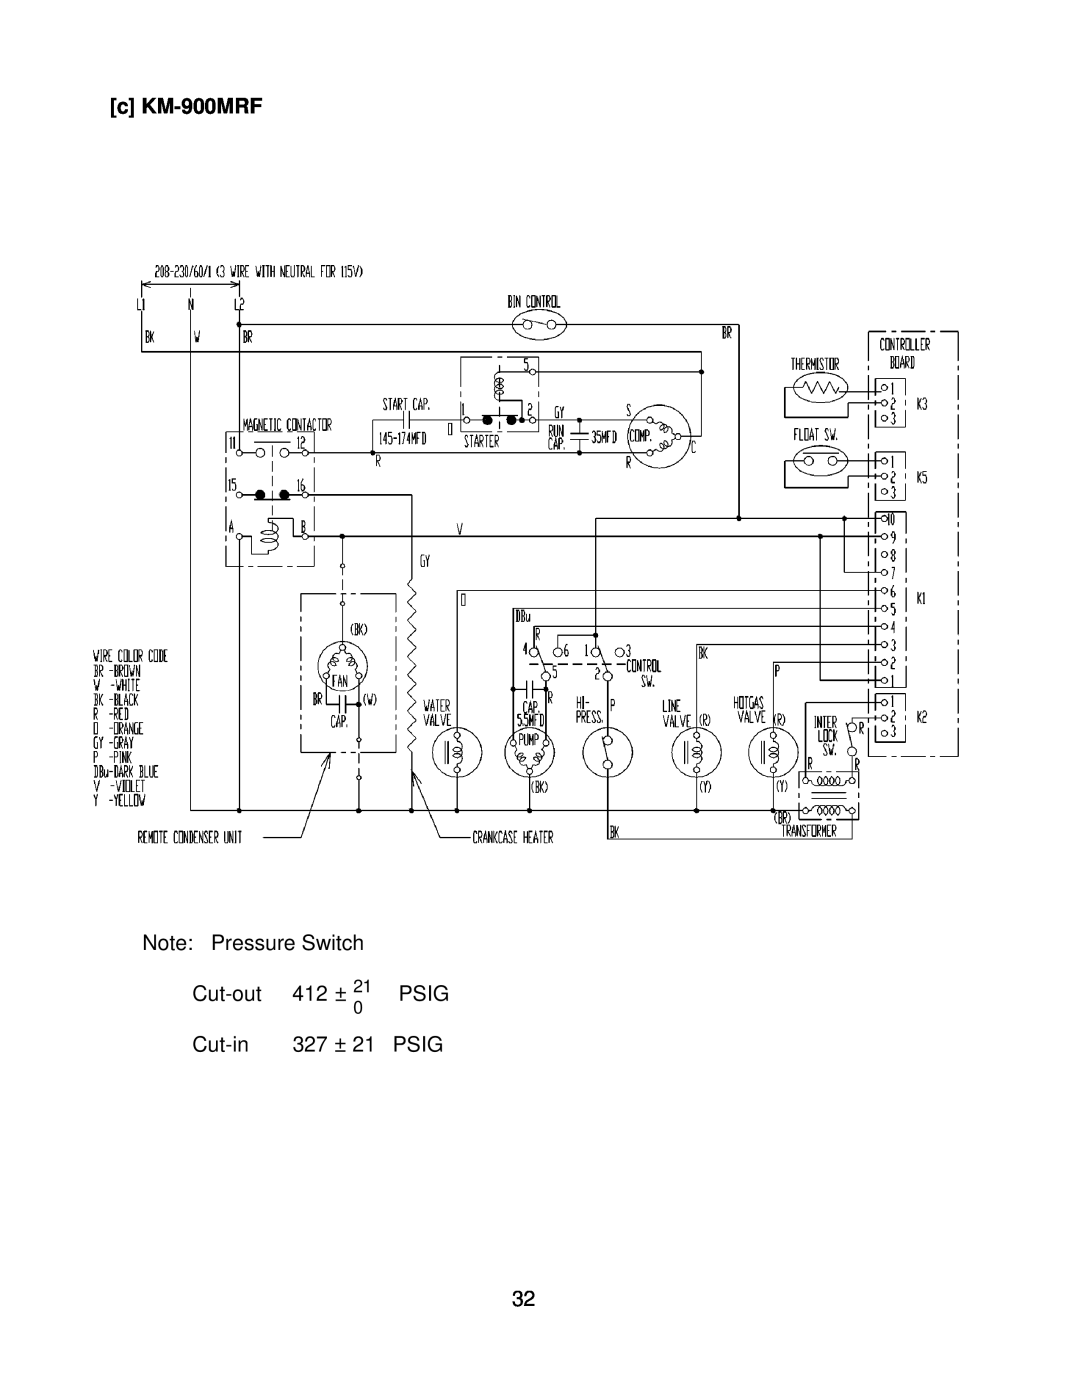 Hoshizaki KM-900MWF, KM-900MRF3, KM-900MAF c KM-900MRF, Note Pressure Switch, Cut-out, 412 ±, Psig, Cut-in, 327 ± 